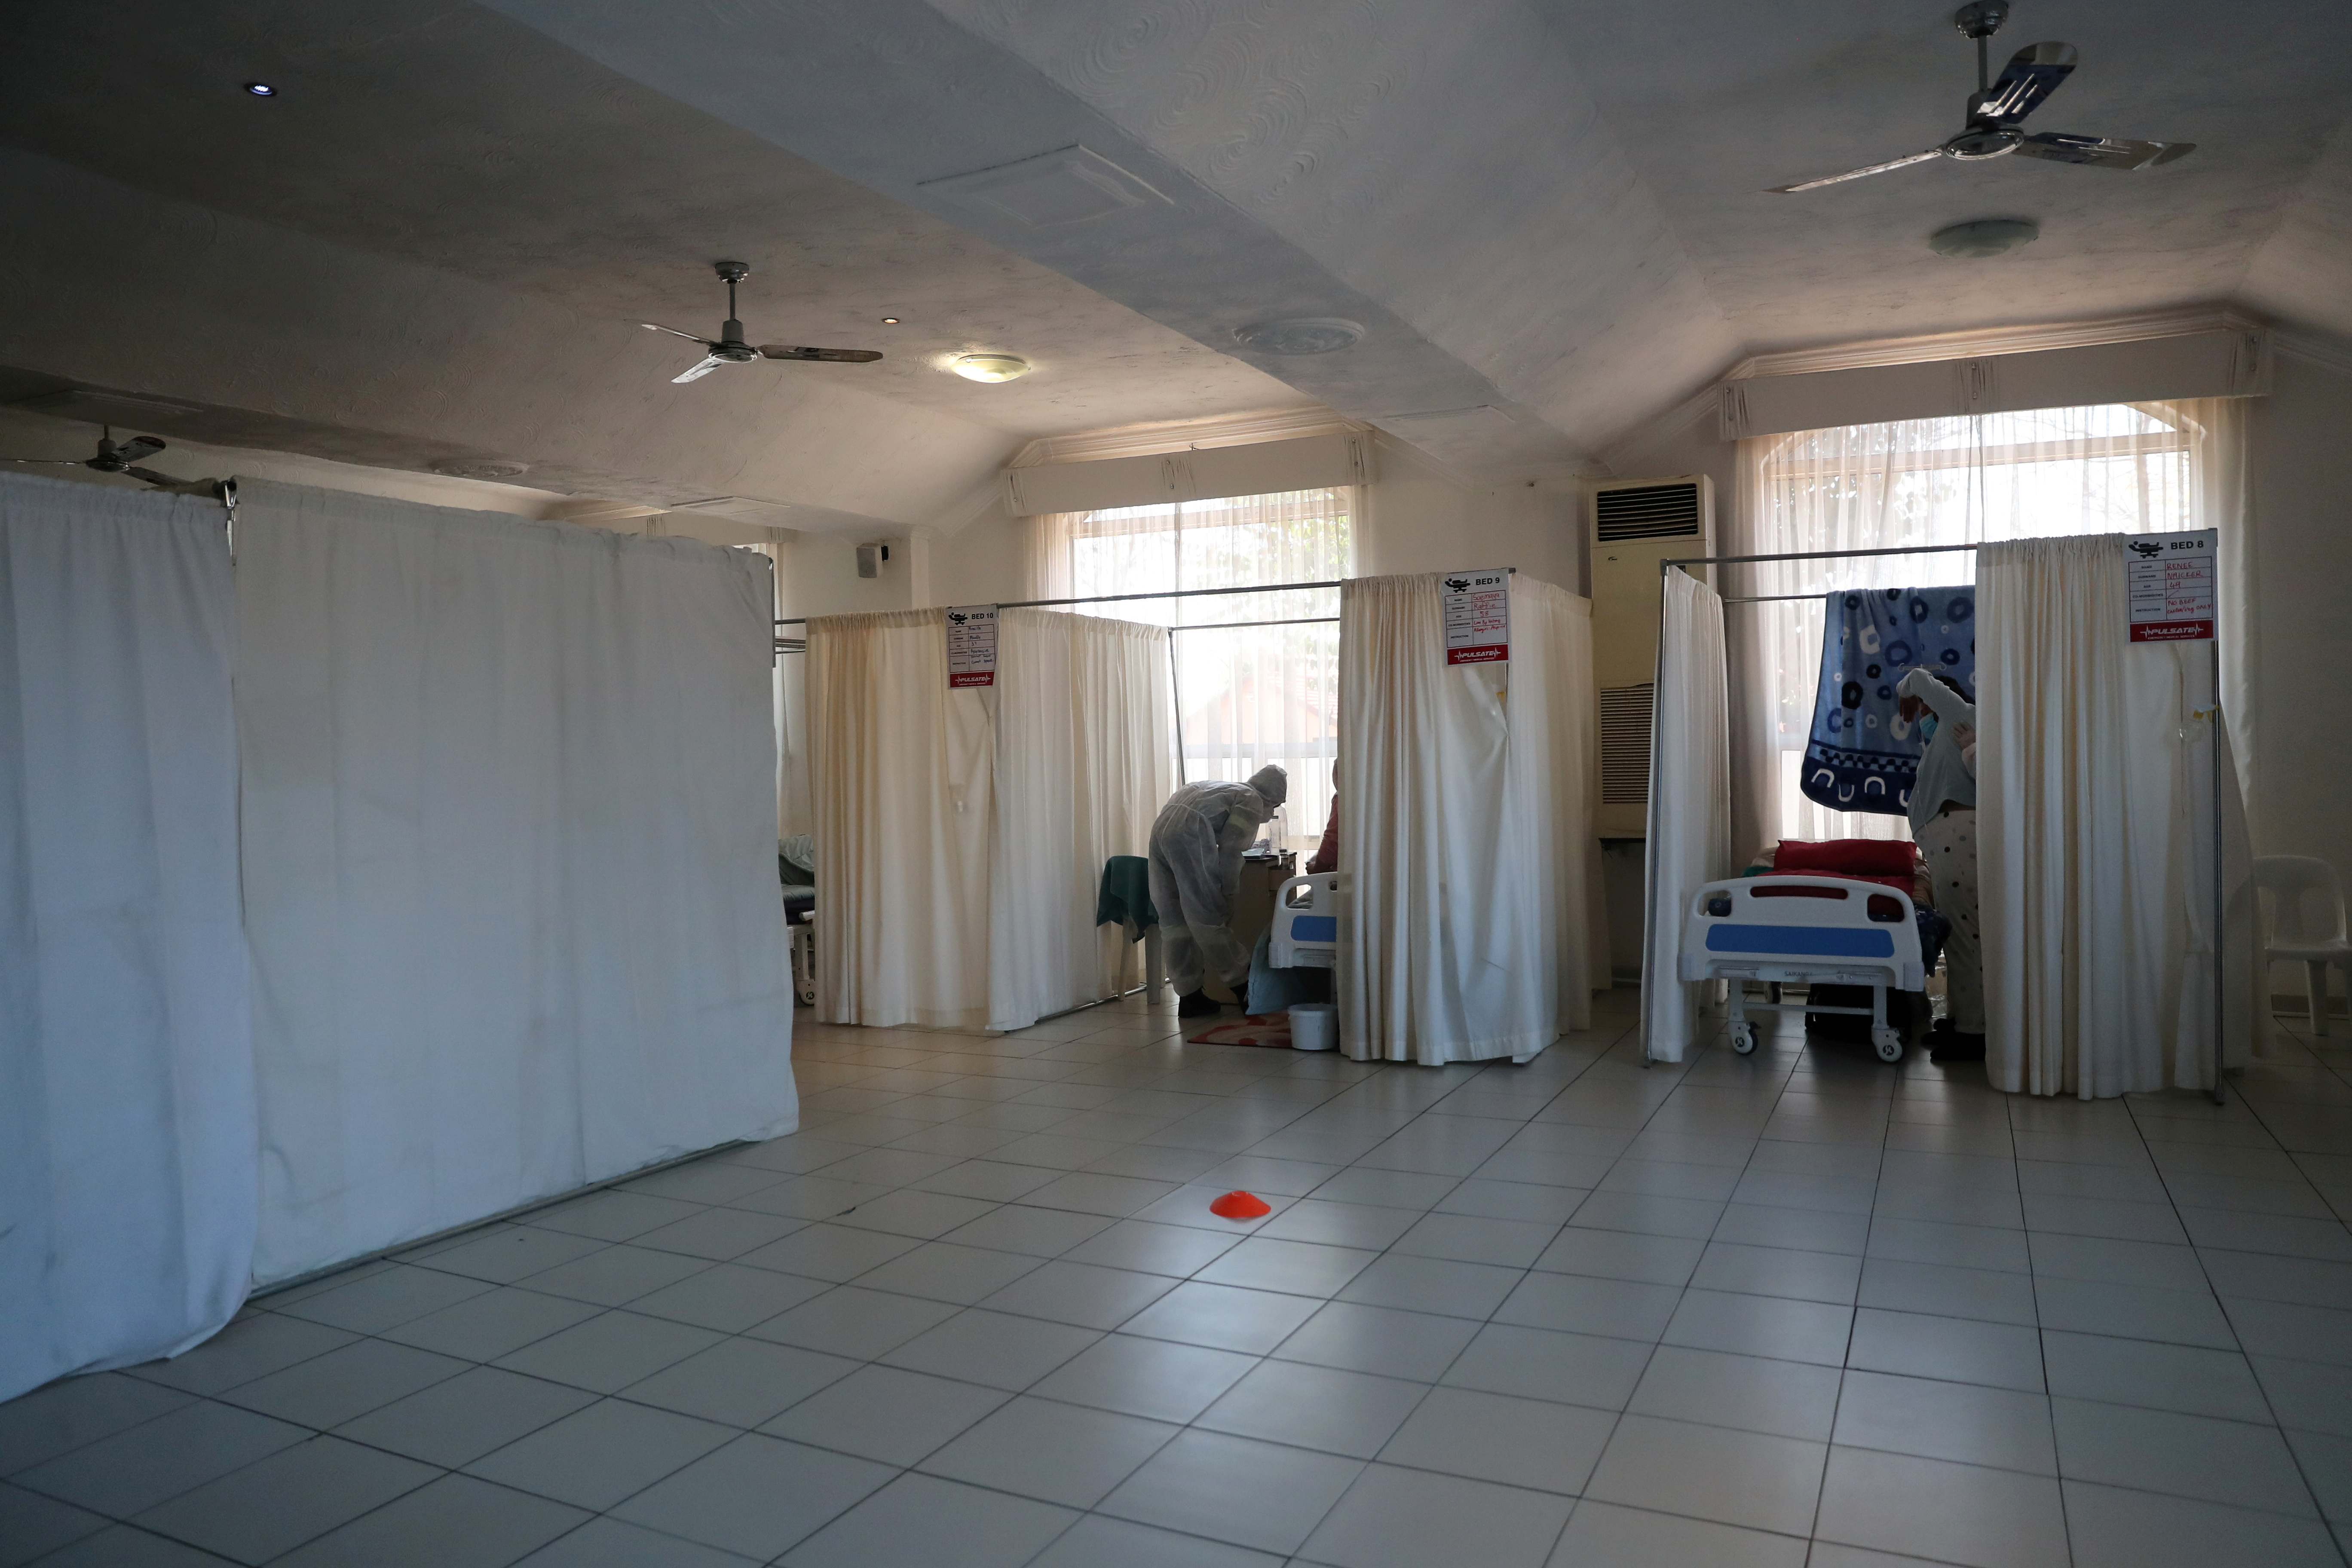 Profissionais de saúde assistem pacientes em tratamento em um hospital improvisado administrado pela organização de caridade The Gift of the Givers, durante o surto da doença coronavírus (COVID-19) em Joanesburgo, África do Sul, 11 de julho de 2021. REUTERS / Sumaya Hisham